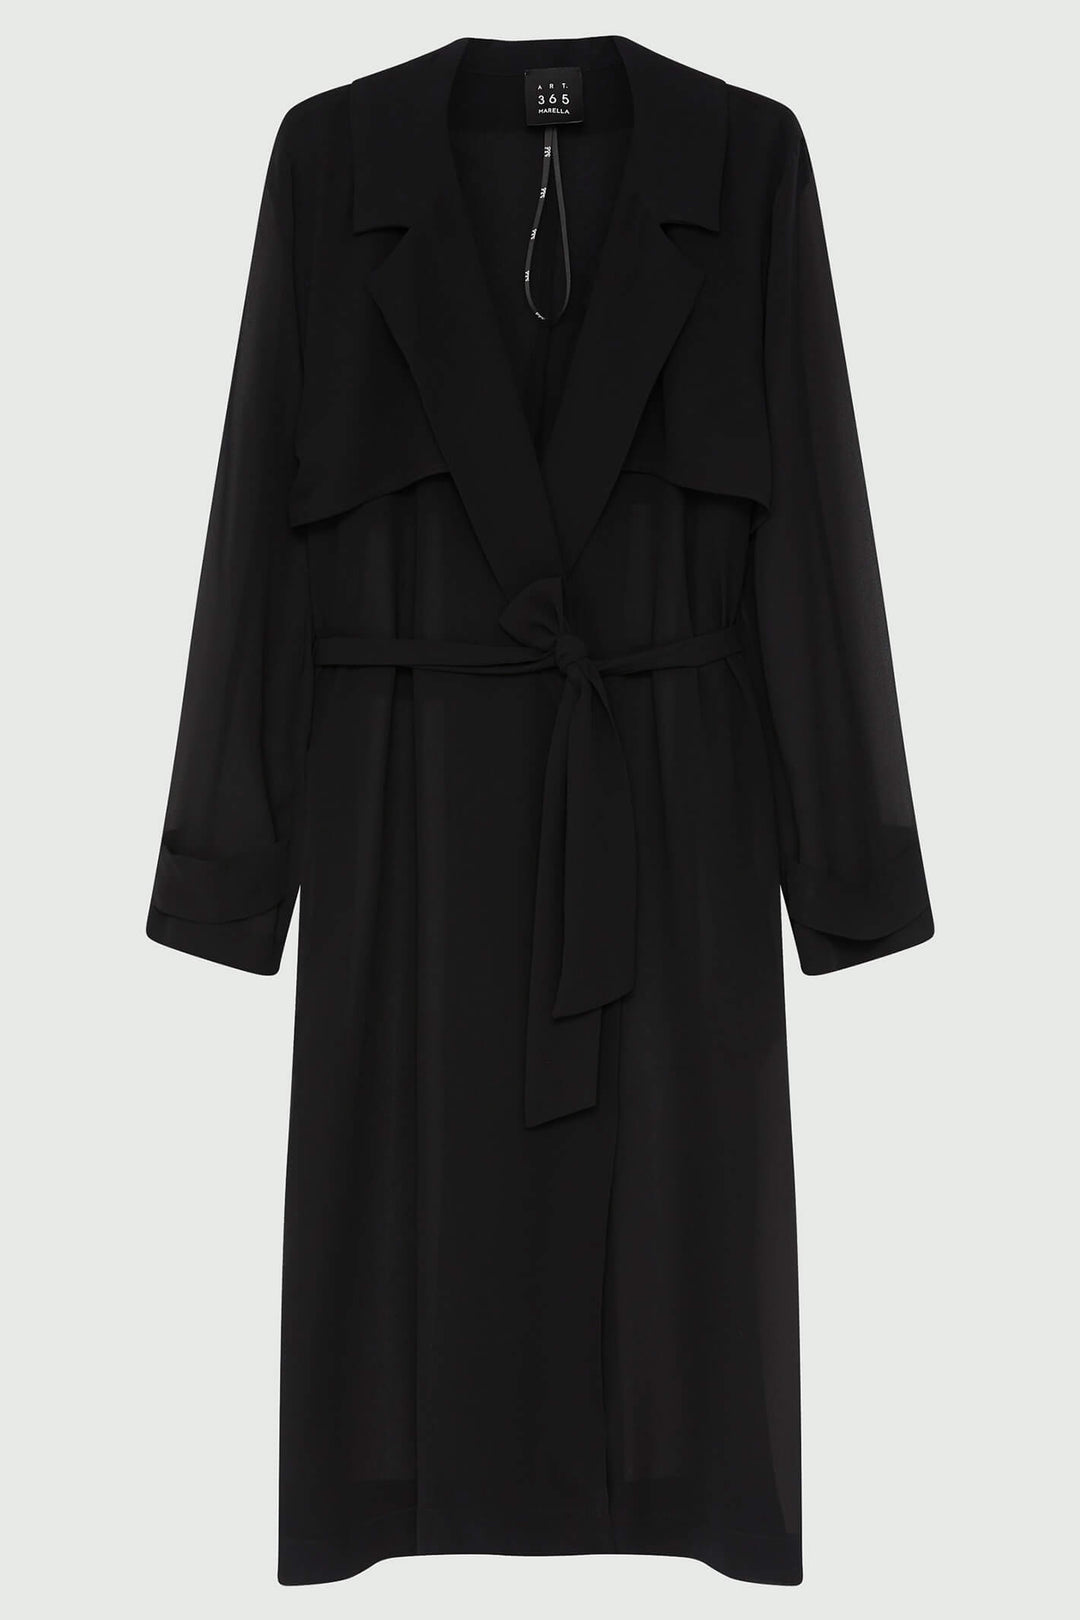 Marella Galizia 2331260133200 Black Georgette Trench Coat - Olivia Grace Fashion